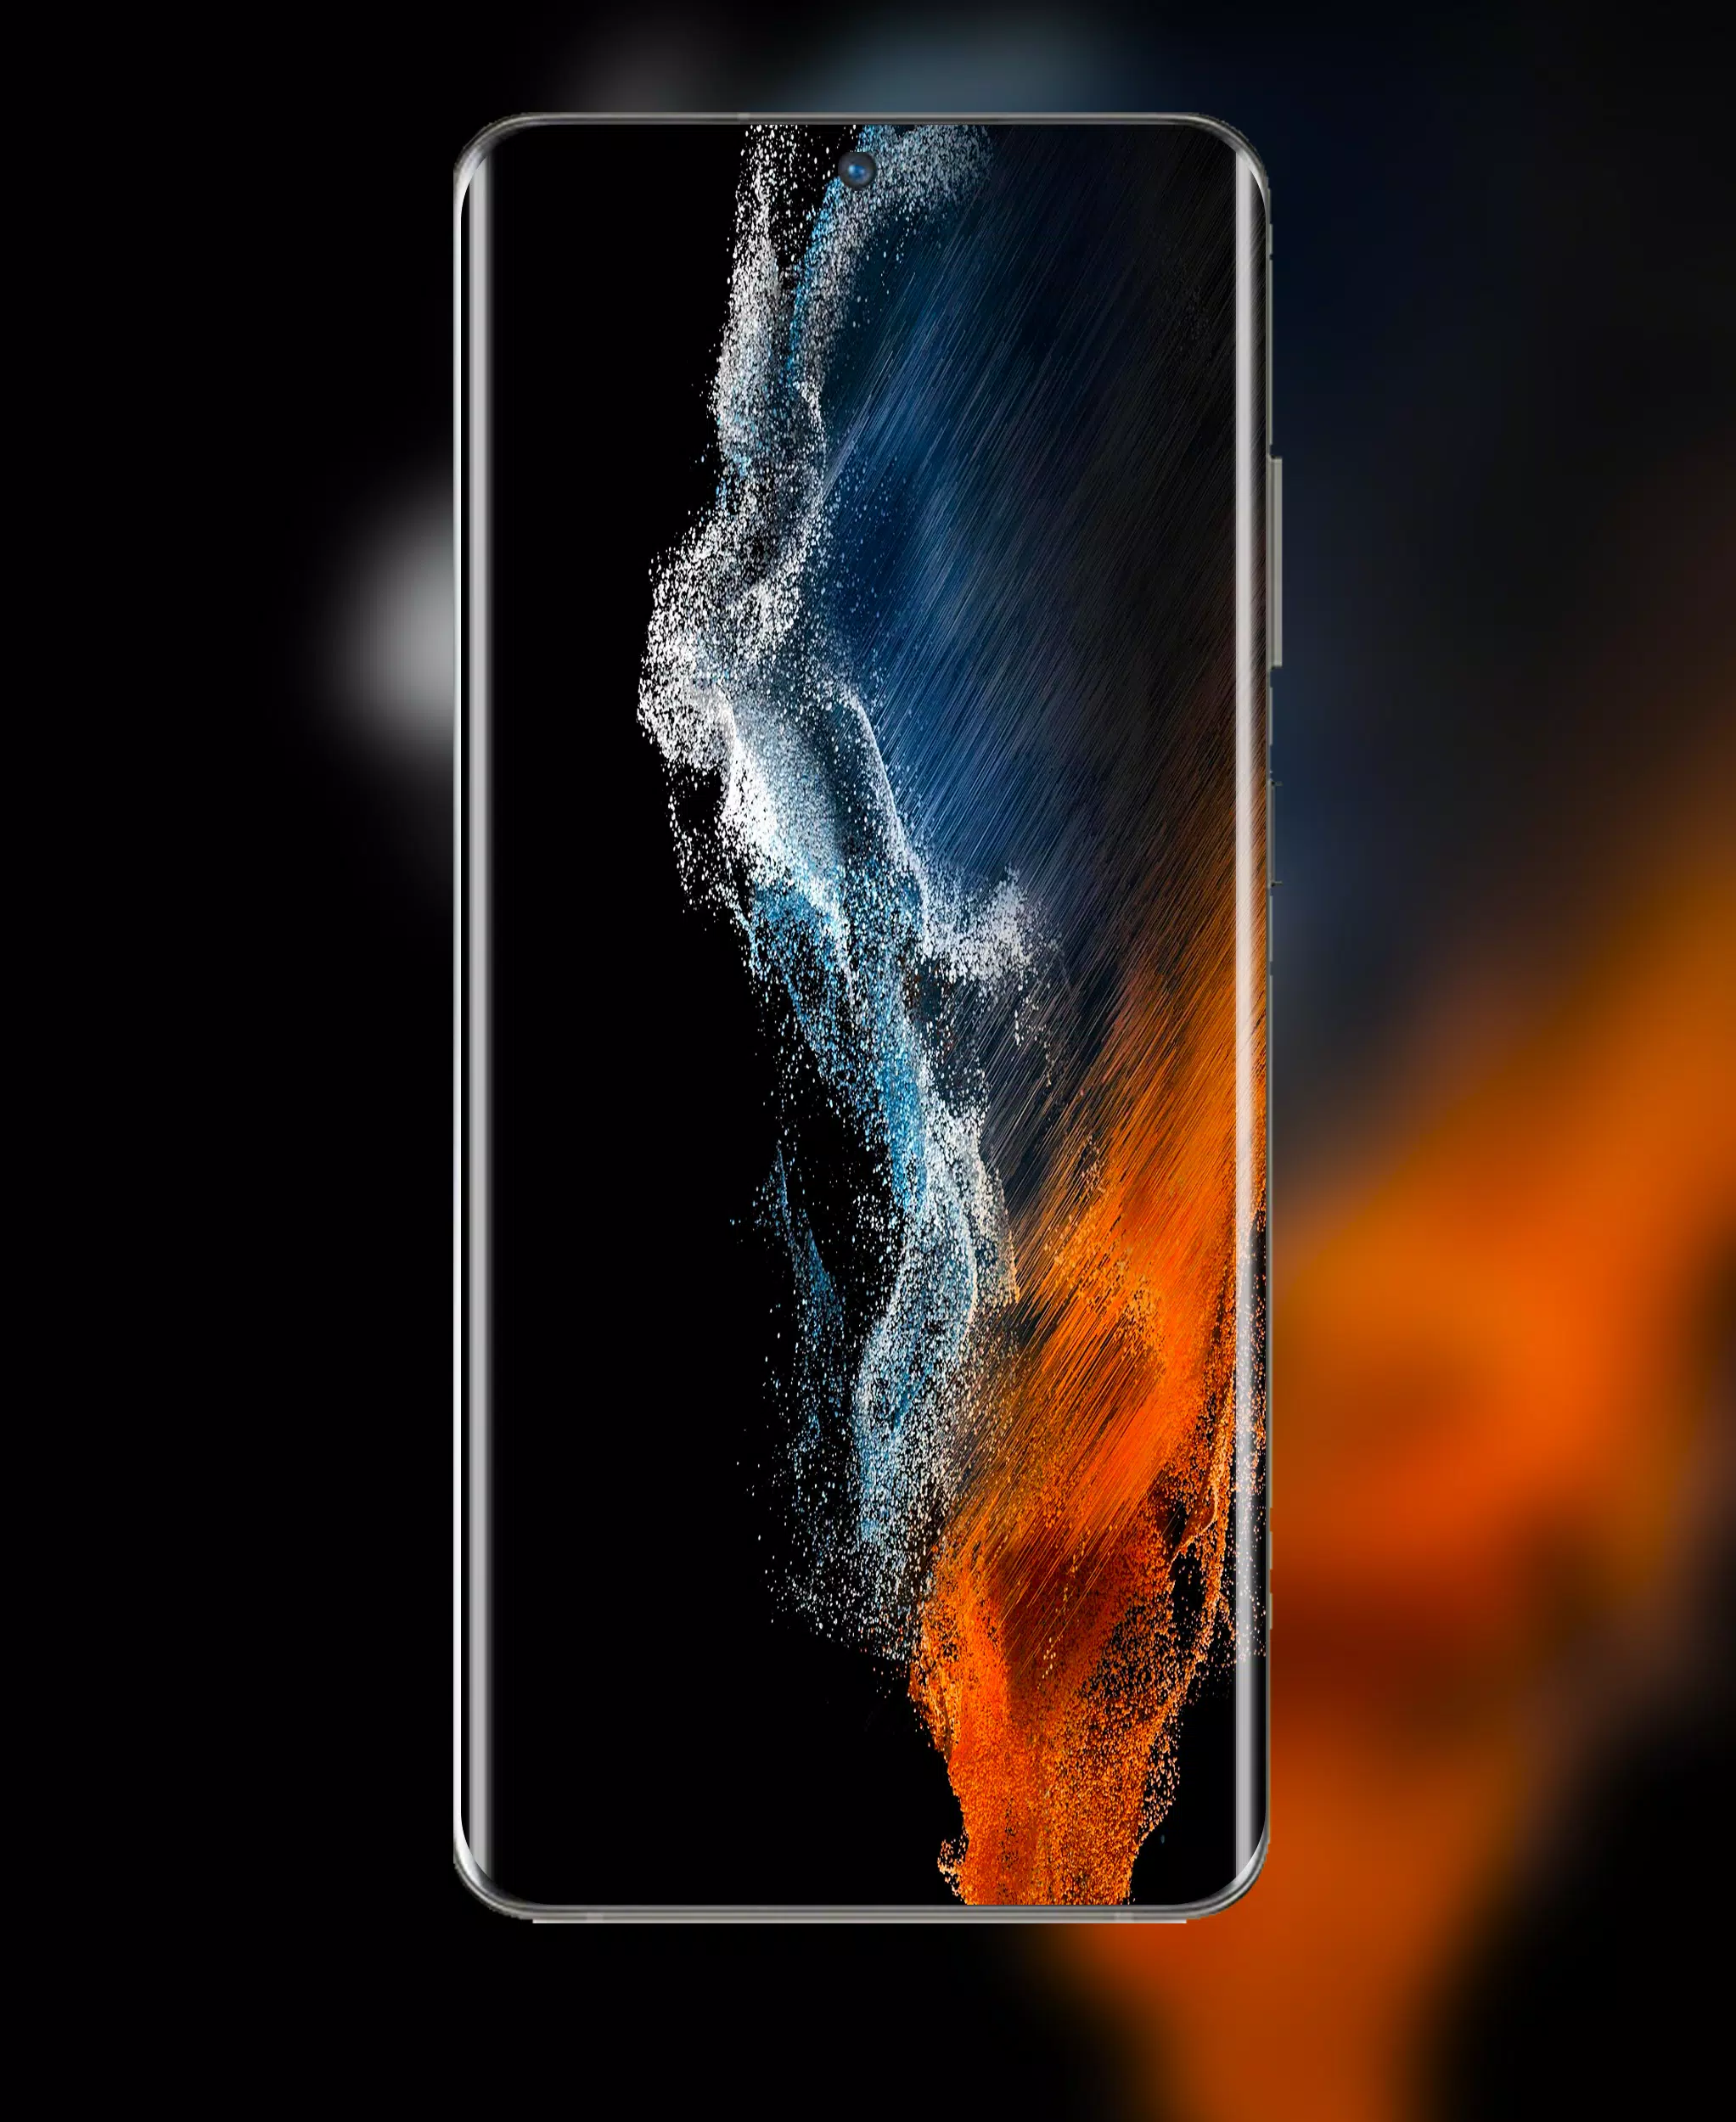 Bạn muốn sở hữu nhiều hình nền đẹp cho điện thoại Samsung Galaxy S22 Ultra của mình? Hãy tải về Galaxy S22 Ultra Wallpaper APK ngay hôm nay và khám phá những hình nền độc đáo, mang đến nét tuyệt vời cho màn hình của bạn! Với những hình ảnh độc đáo, bạn sẽ có được trải nghiệm tuyệt vời.